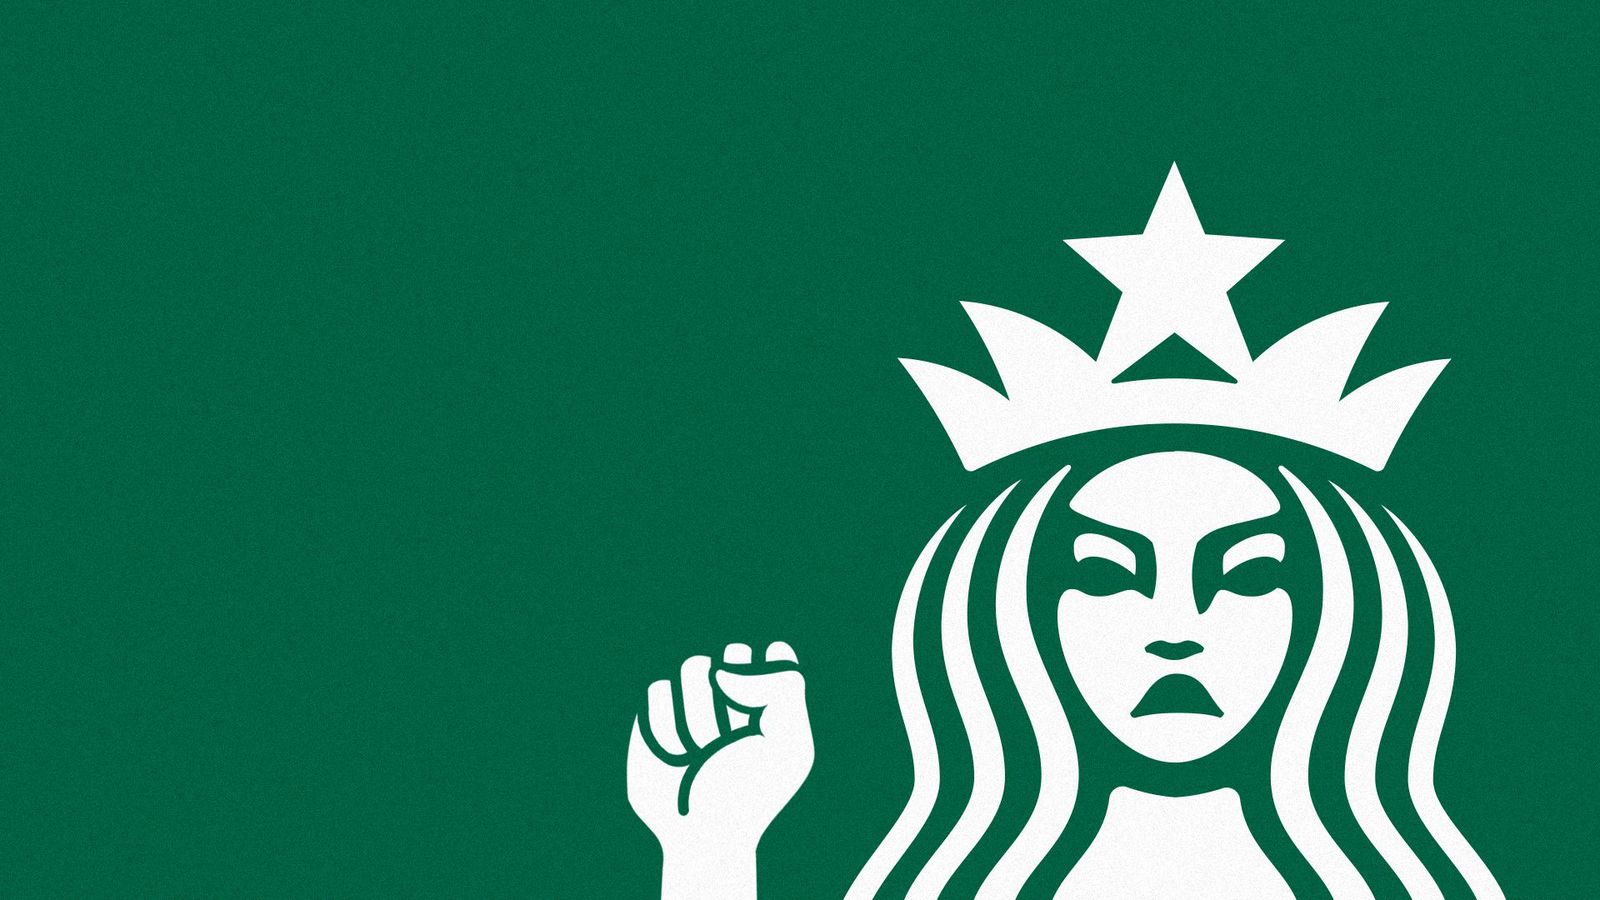 Starbucks asks labor board to suspend mailin ballot union elections